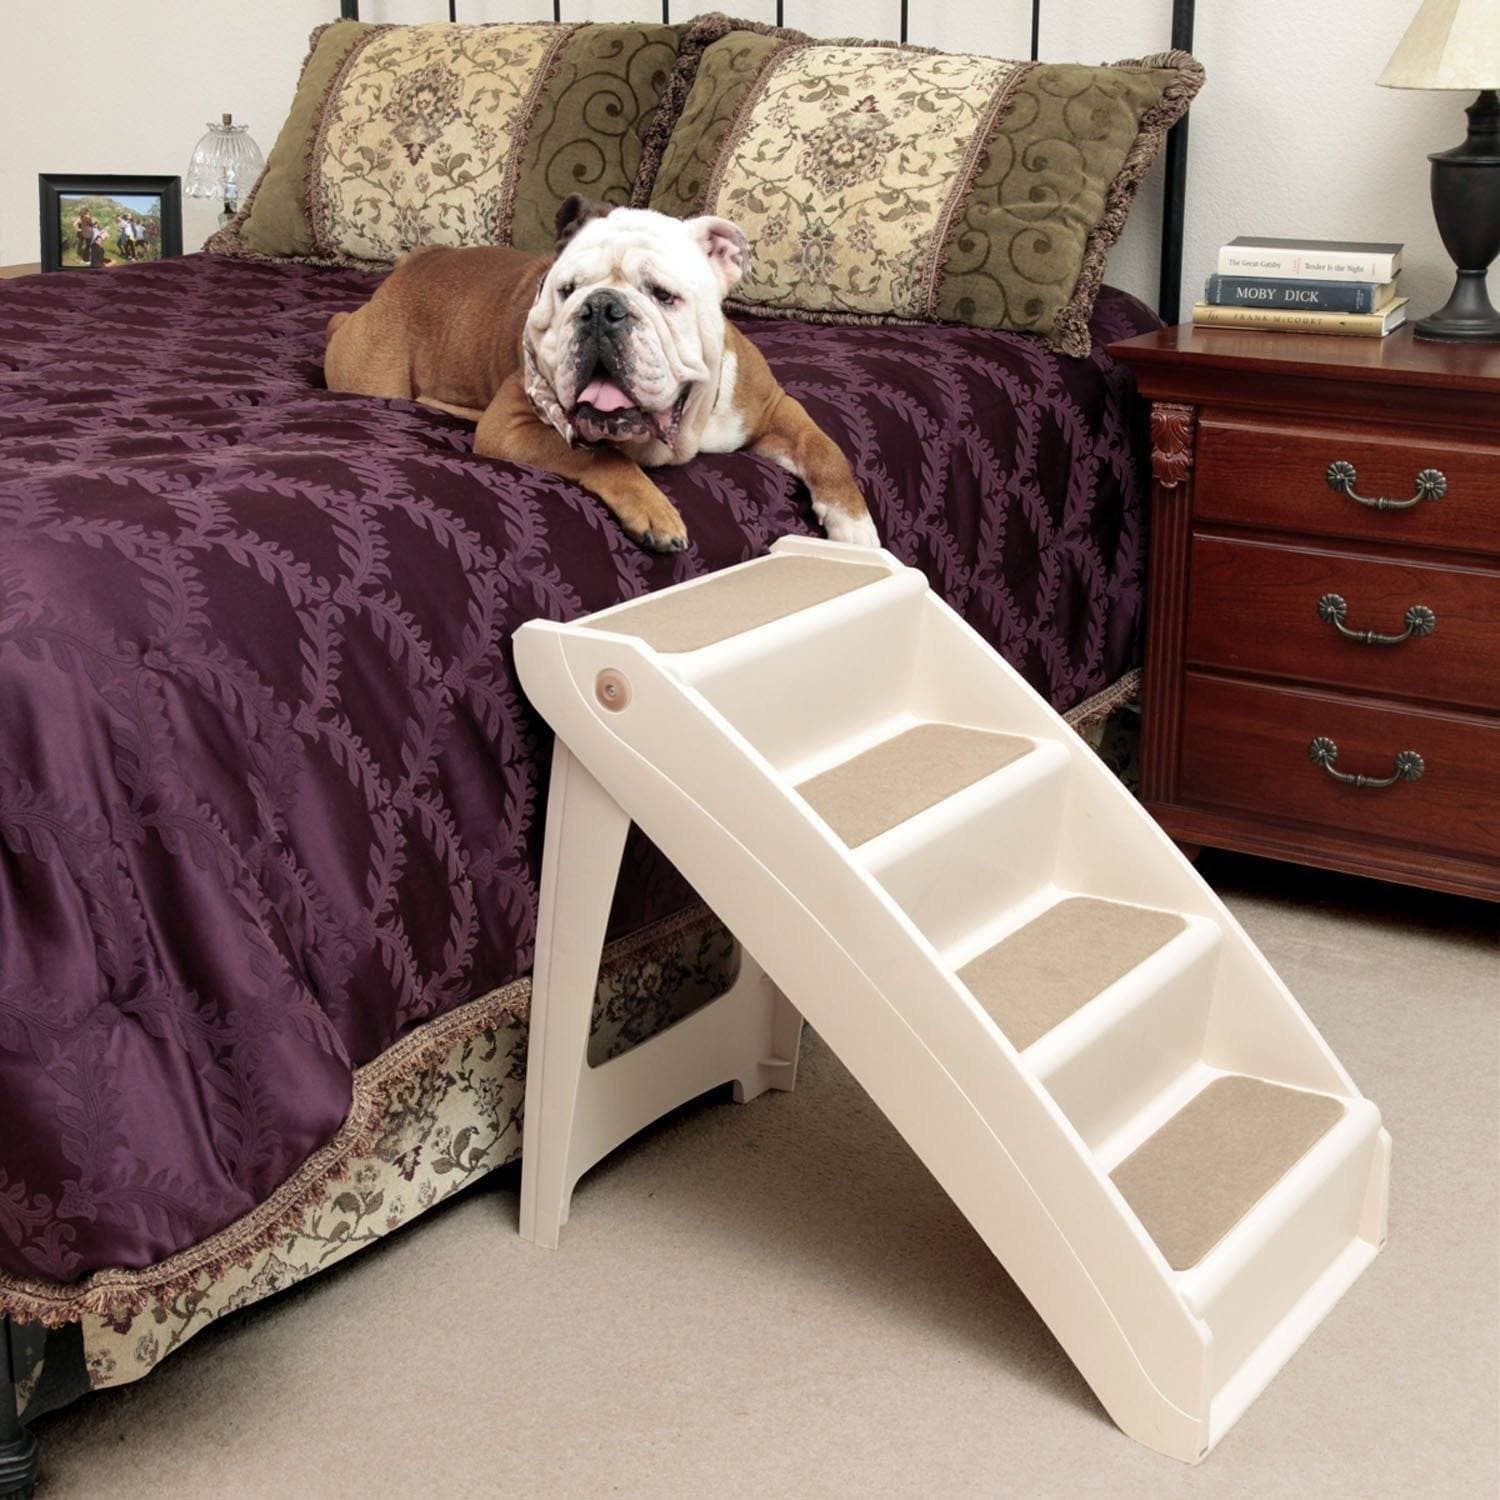 Pasos para perros para cama de 17.7 pulgadas, escaleras alfombradas para  perros, pasos para cama alta